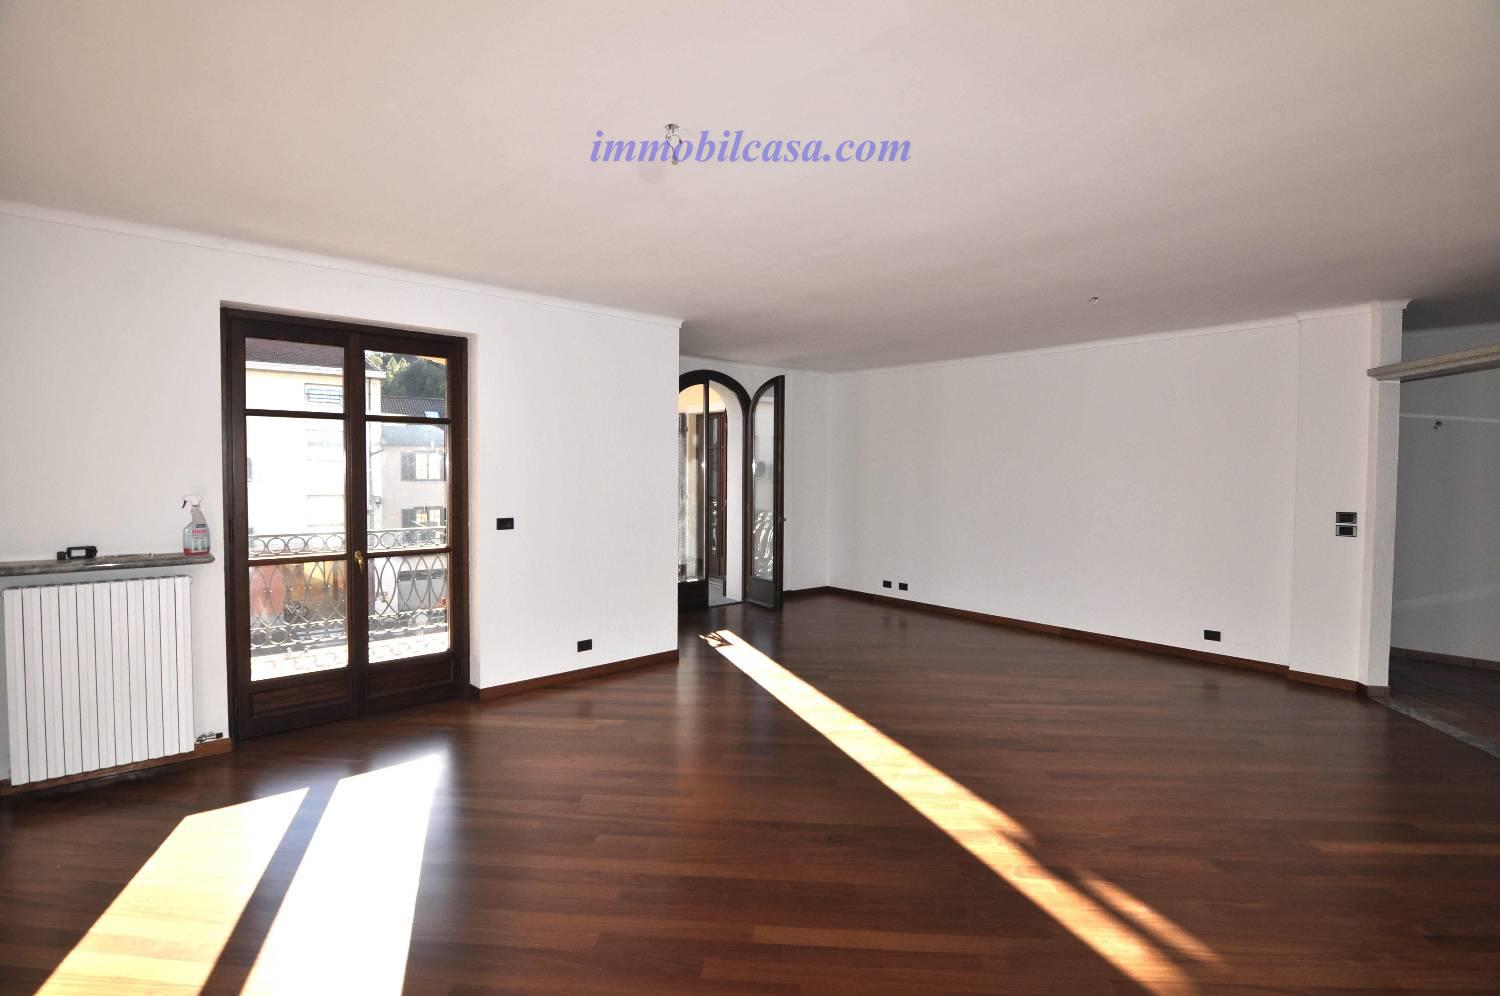 Appartamento in affitto a Boves, 4 locali, prezzo € 600 | PortaleAgenzieImmobiliari.it